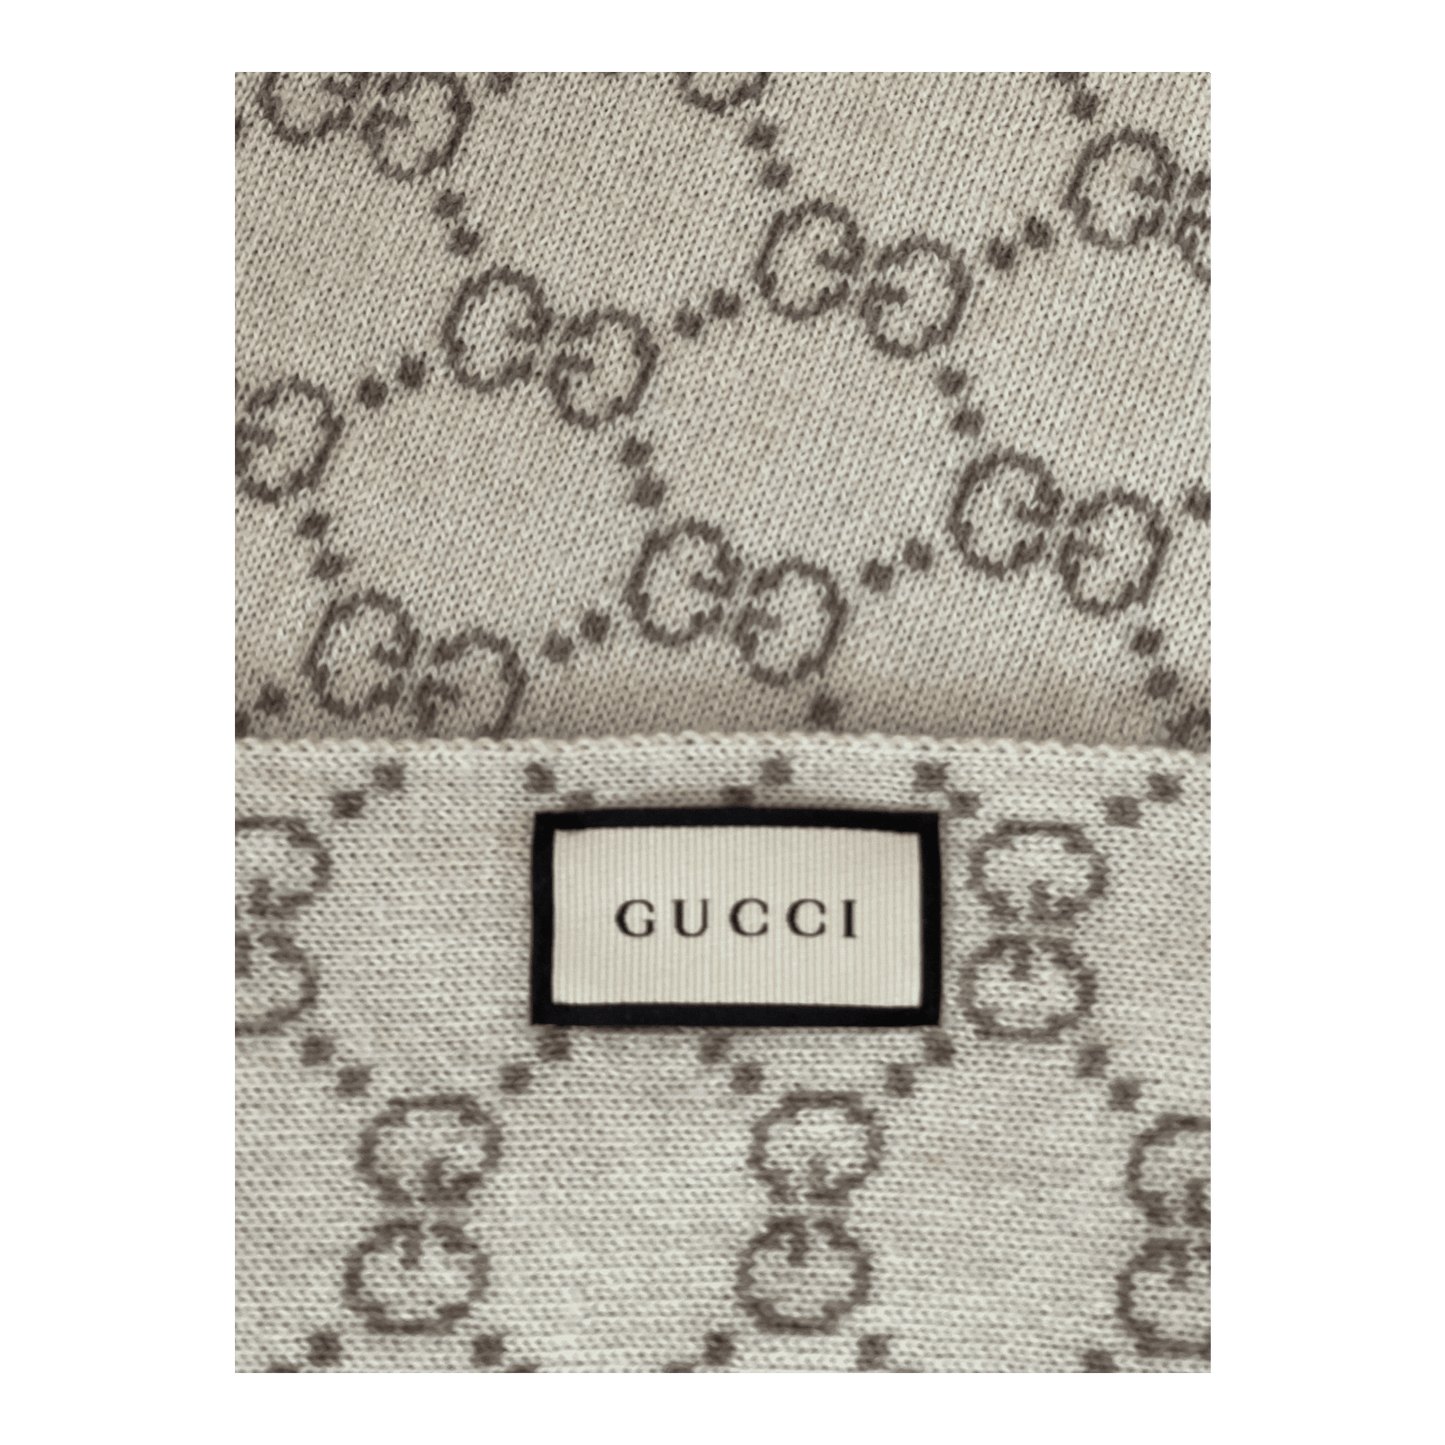 Gucci Scarf Label